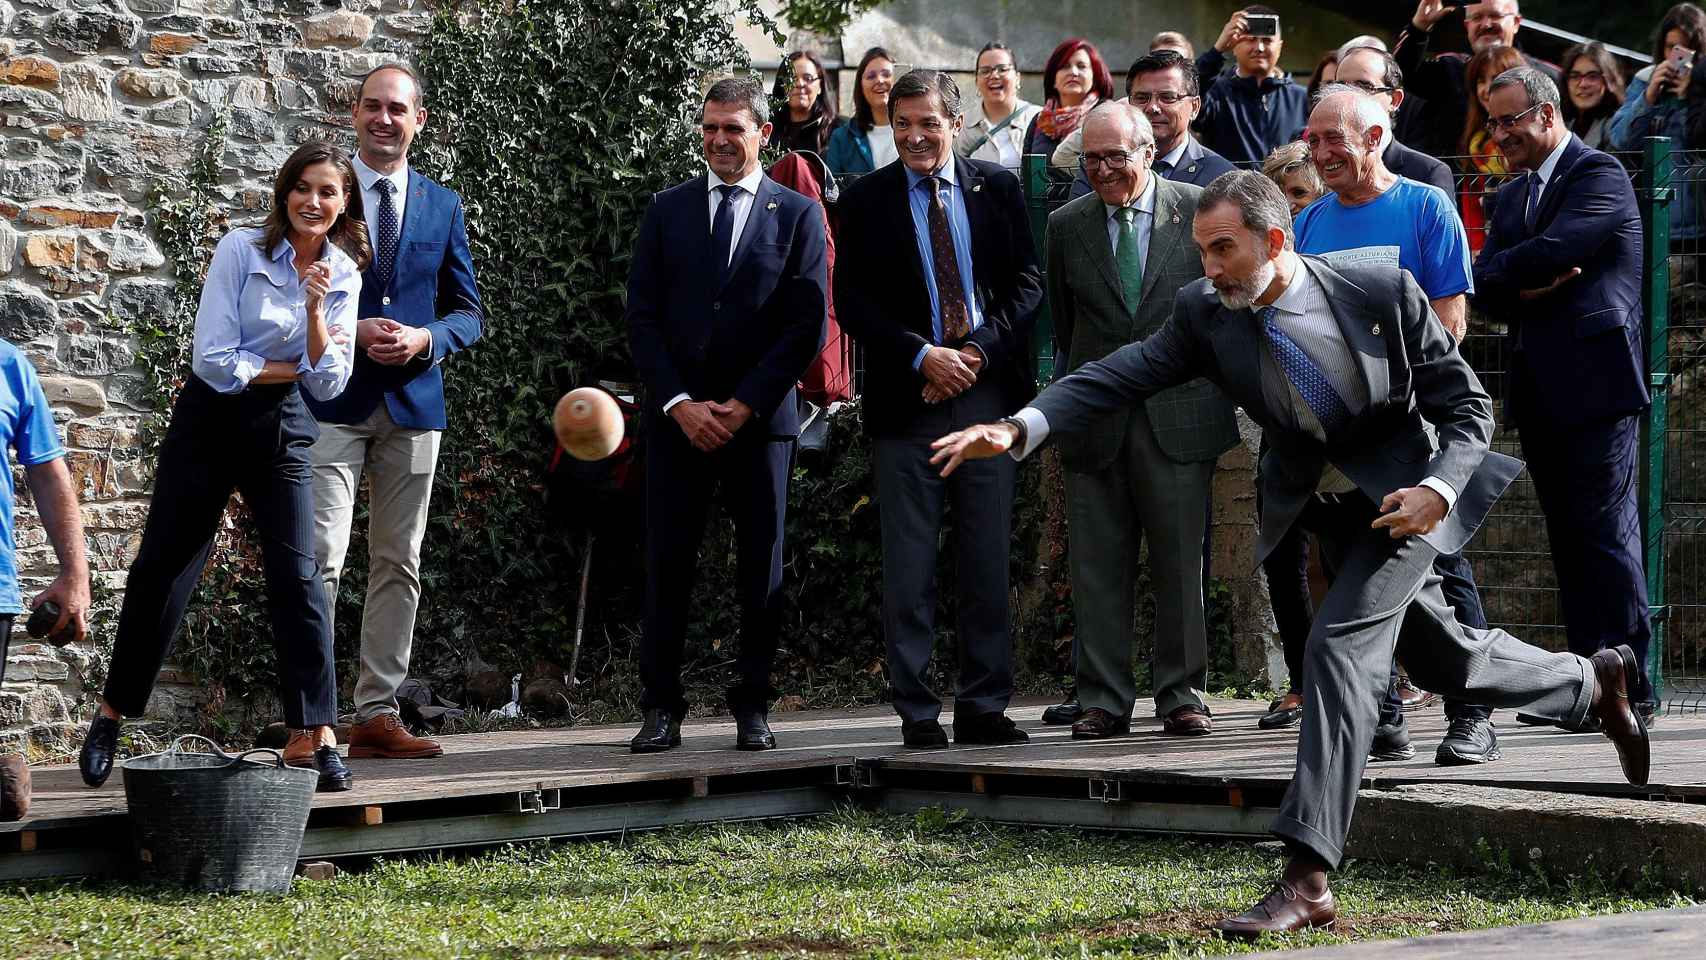 El rey Felipe practicando este deporte tradicional.